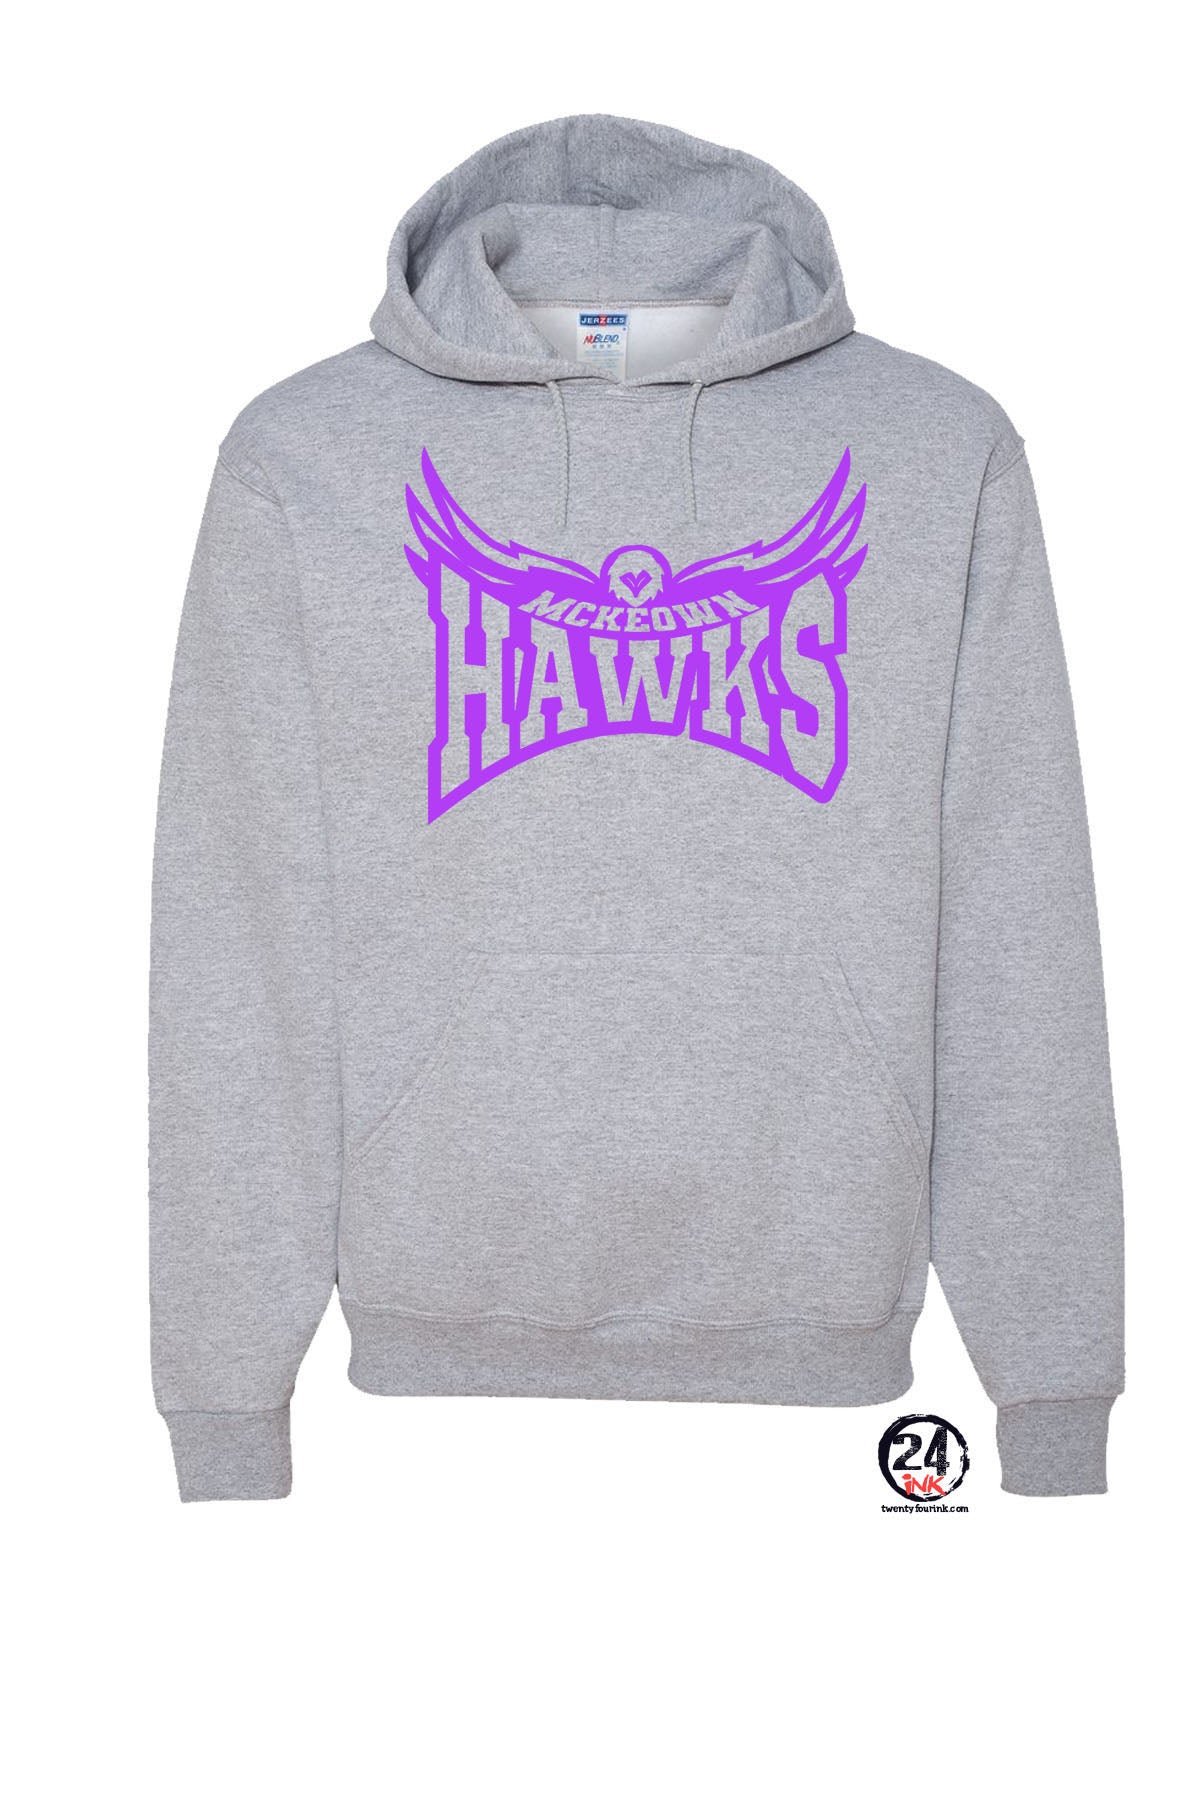 Hampton Hawk Hooded Sweatshirt